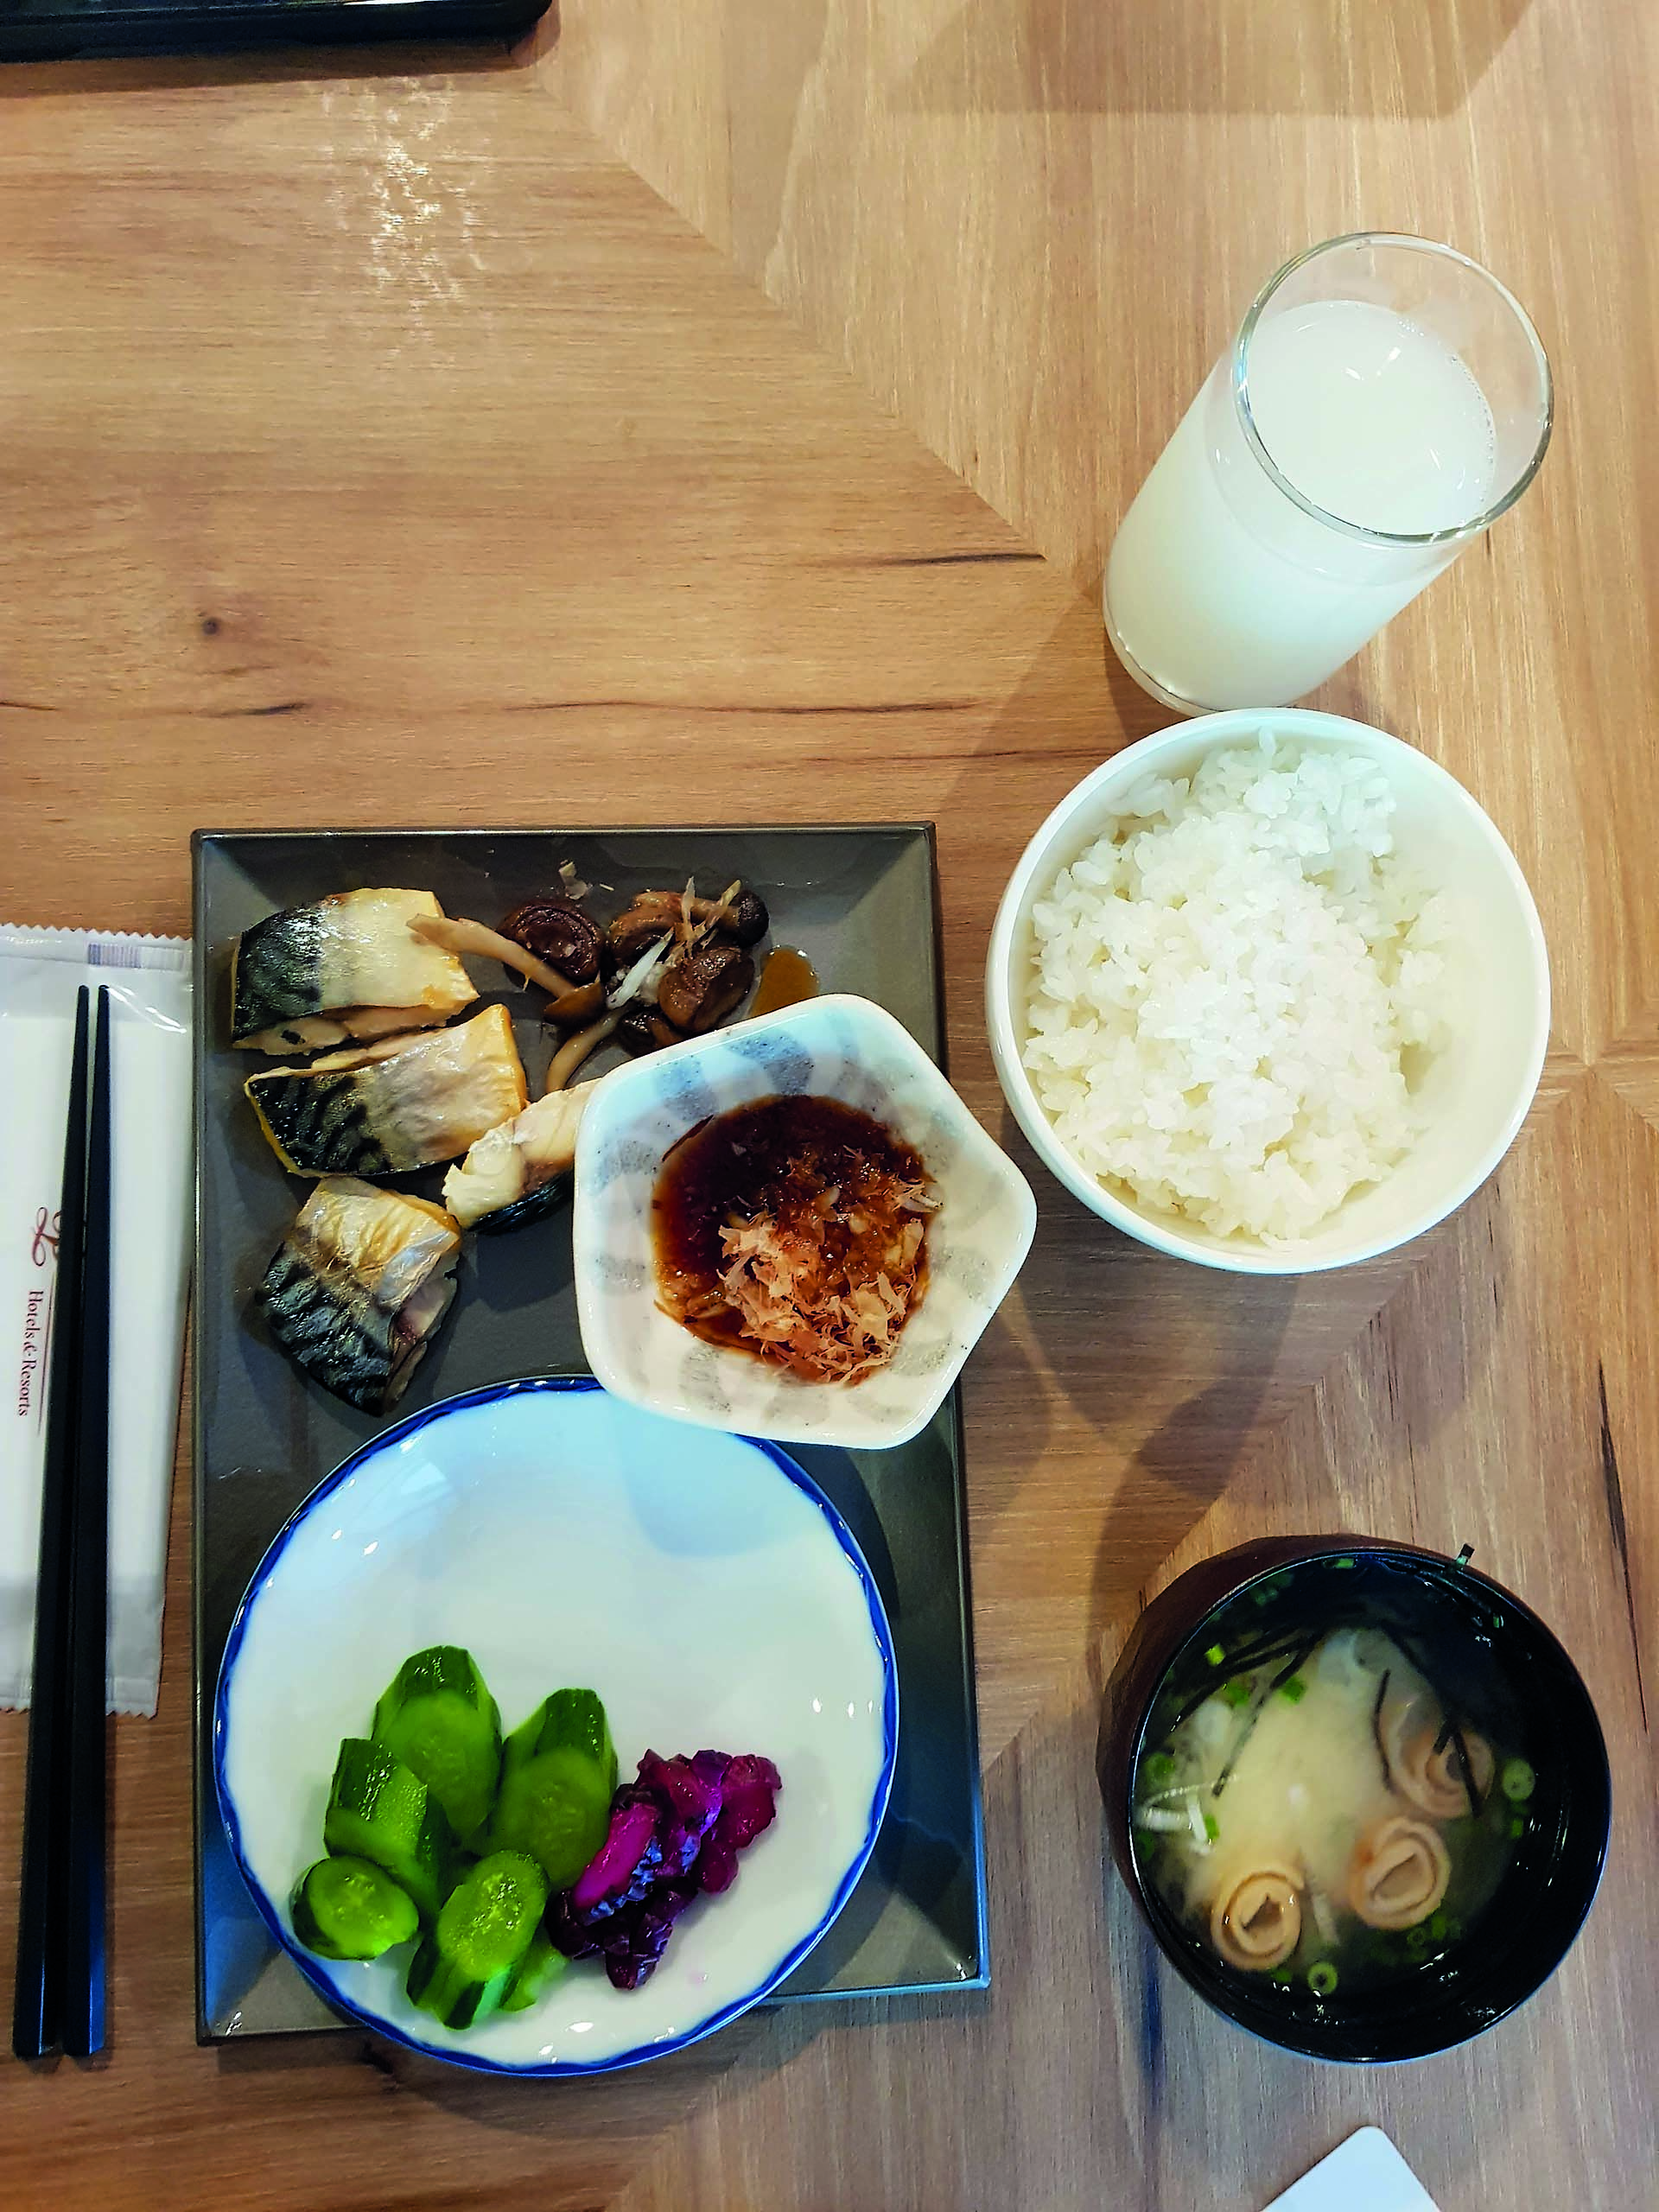 Desayuno tradicional, con sopa de miso, arroz y pescado